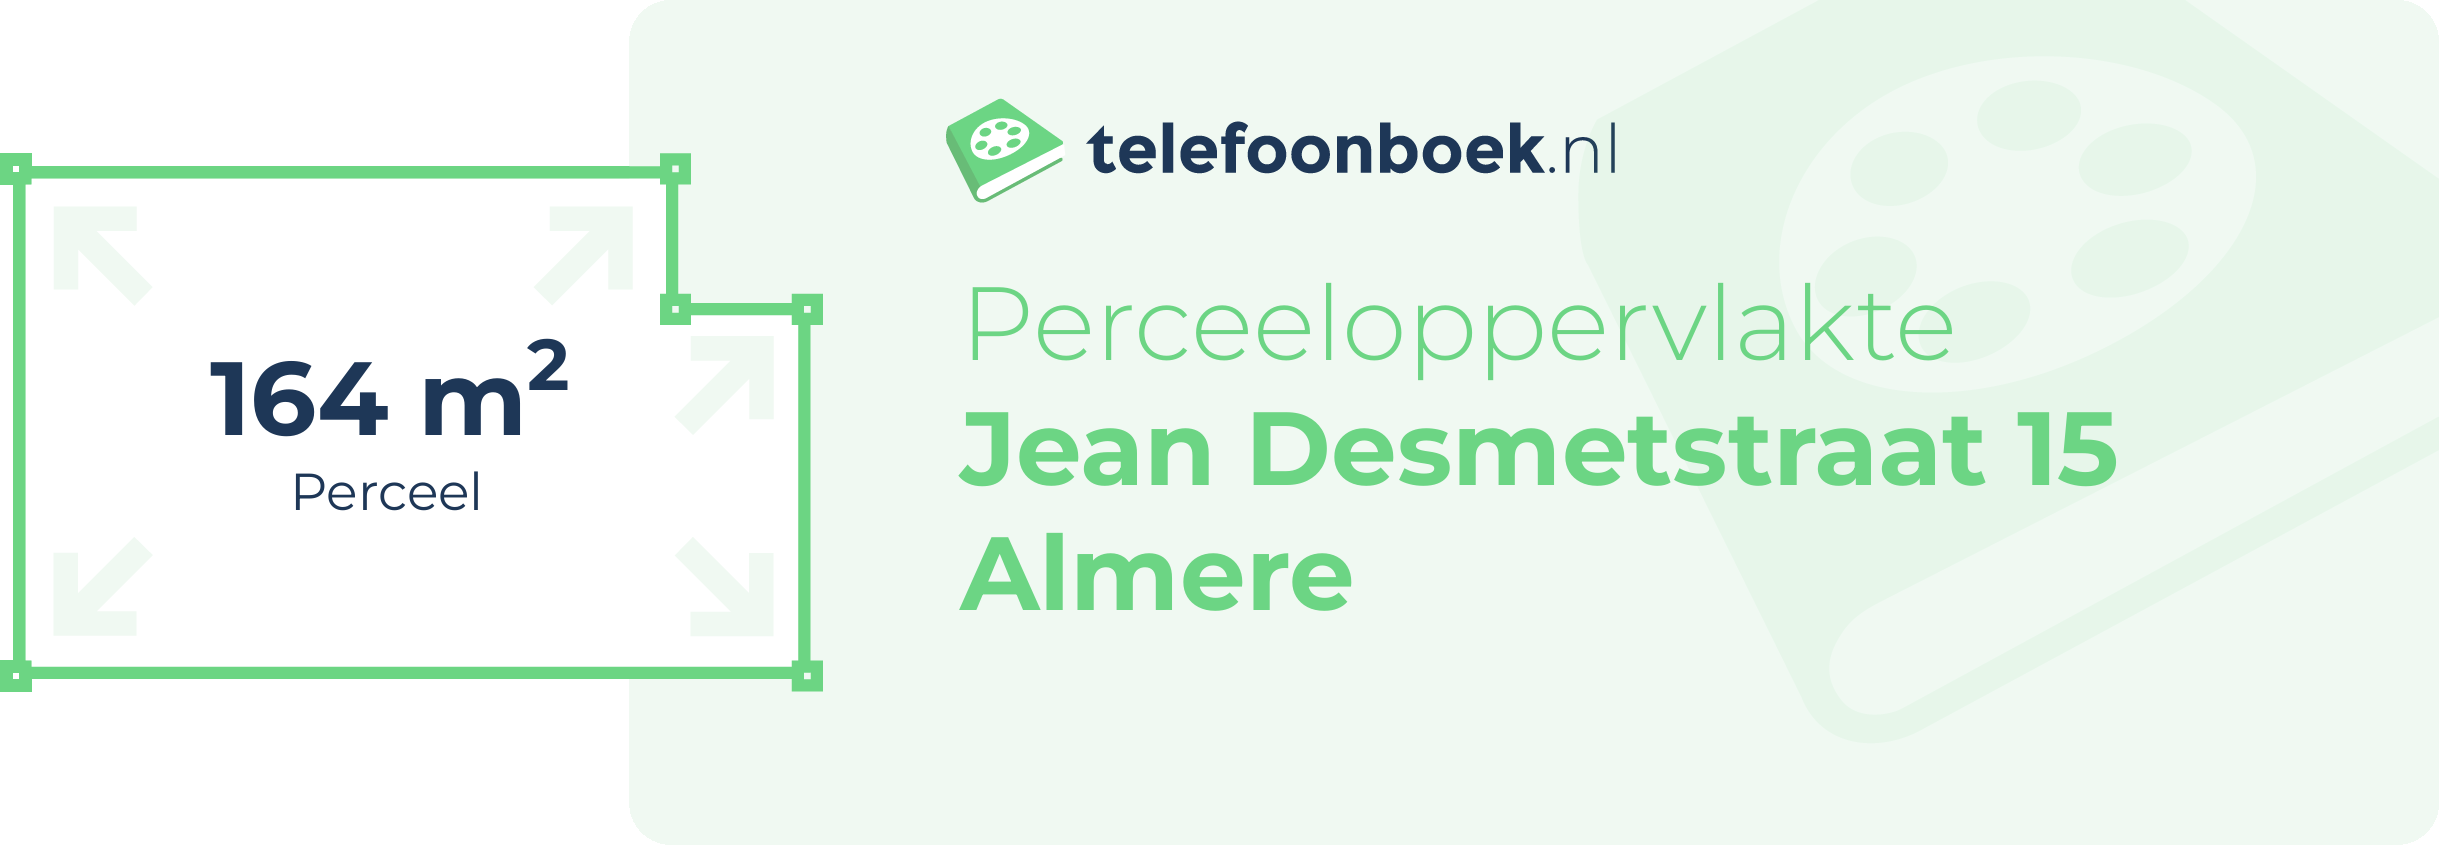 Perceeloppervlakte Jean Desmetstraat 15 Almere